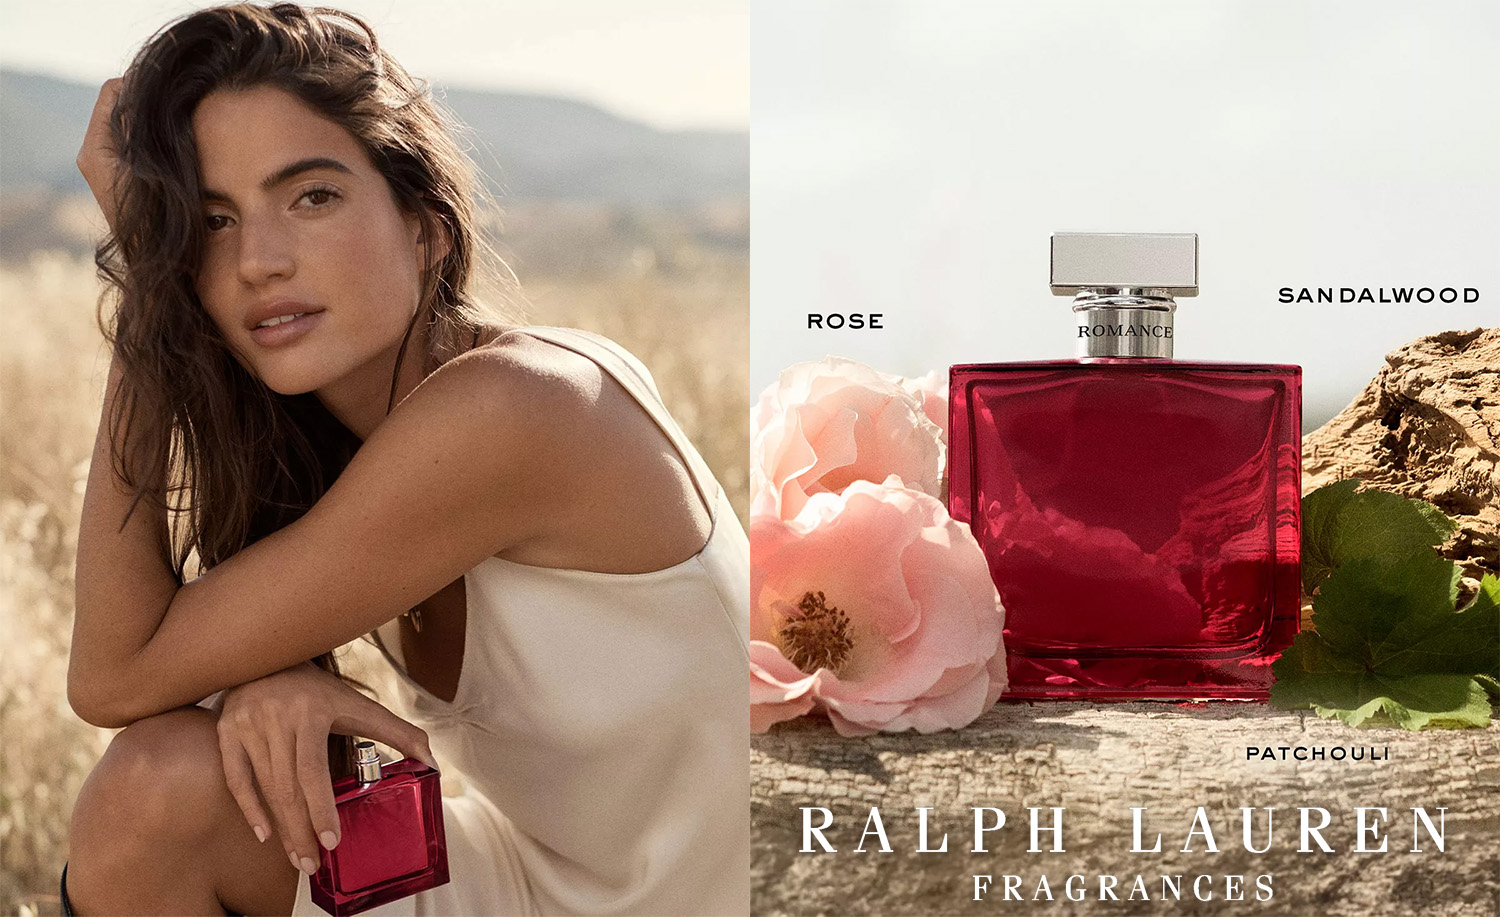 Ralph Lauren Romance Eau de Parfum Intense woody floral perfume guide to  scents